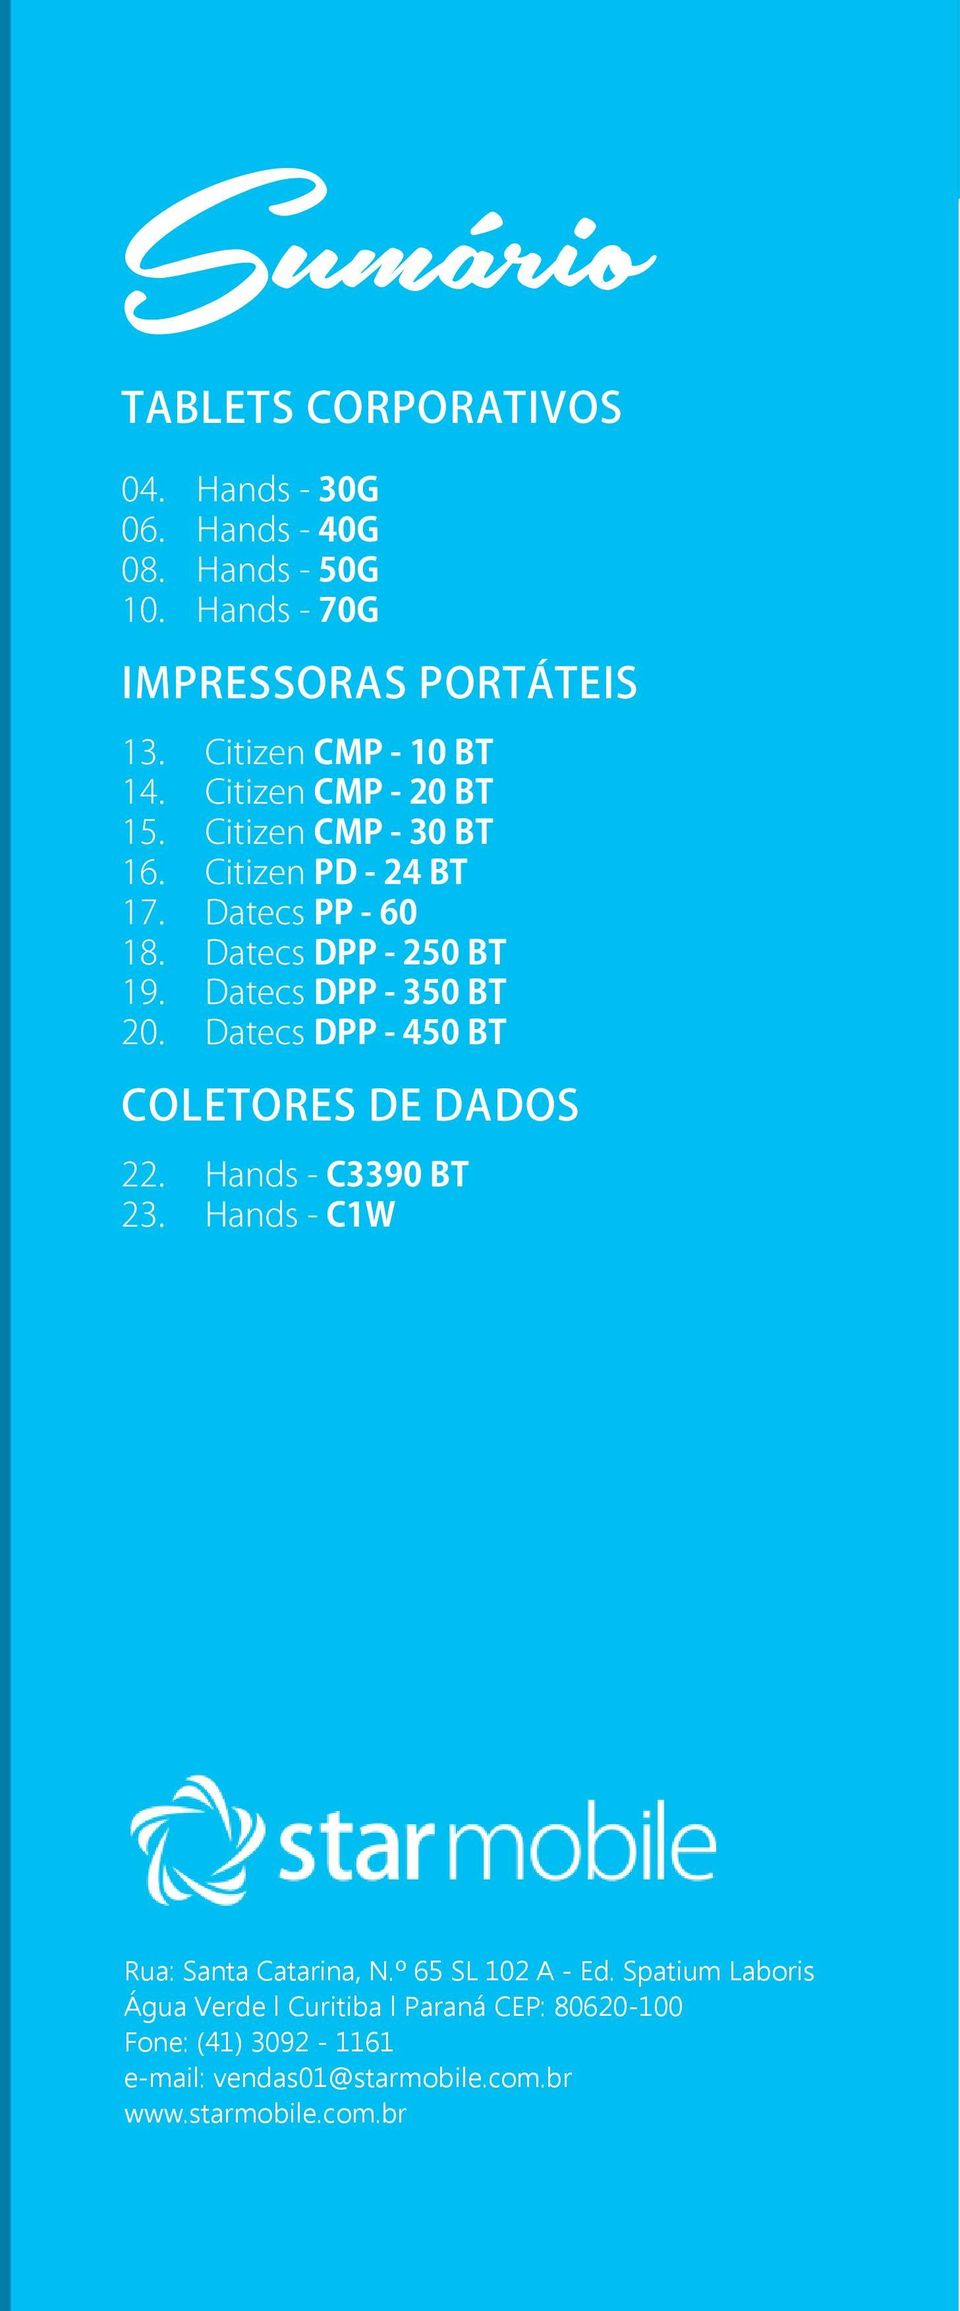 Datecs DPP - 350 BT 20. Datecs DPP - 450 BT COLETORES DE DADOS 22. Hands - C3390 BT 23. Hands - C1W Rua: Santa Catarina, N.